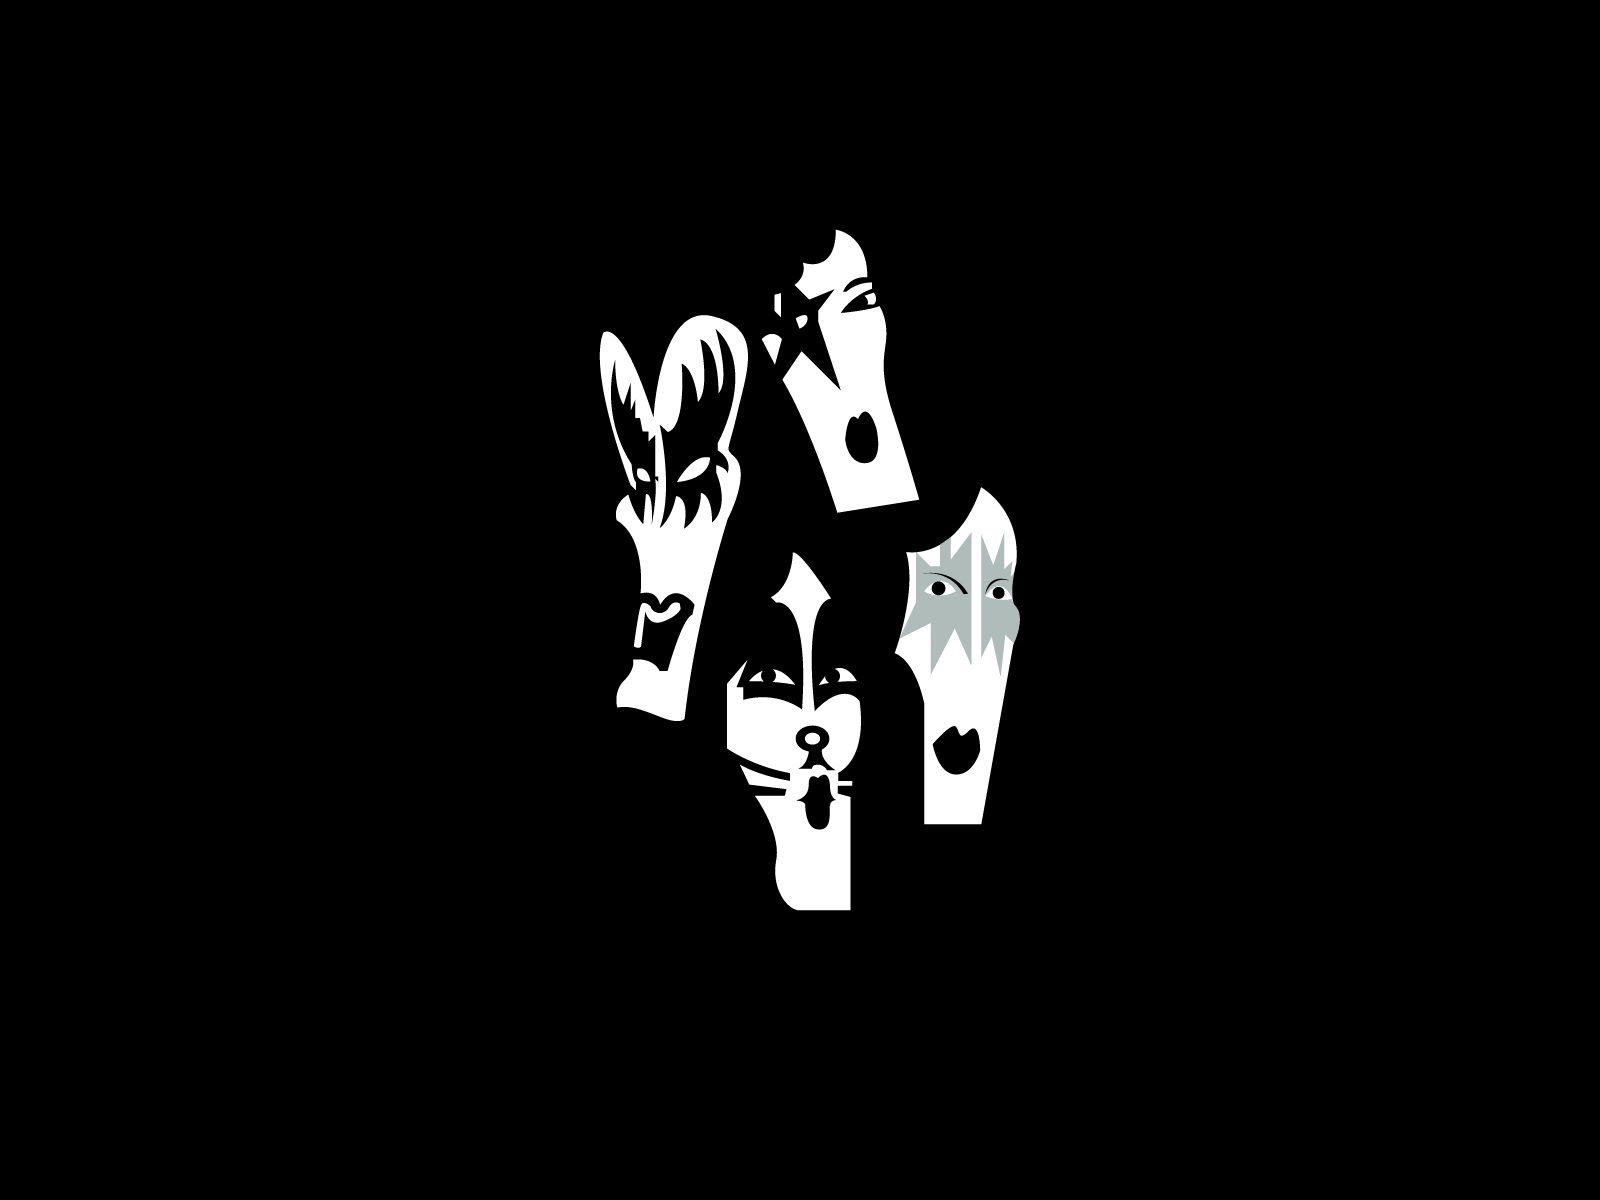 Kiss band logo and wallpaper  Band logos  Rock band logos, metal bands logos, punk bands logos